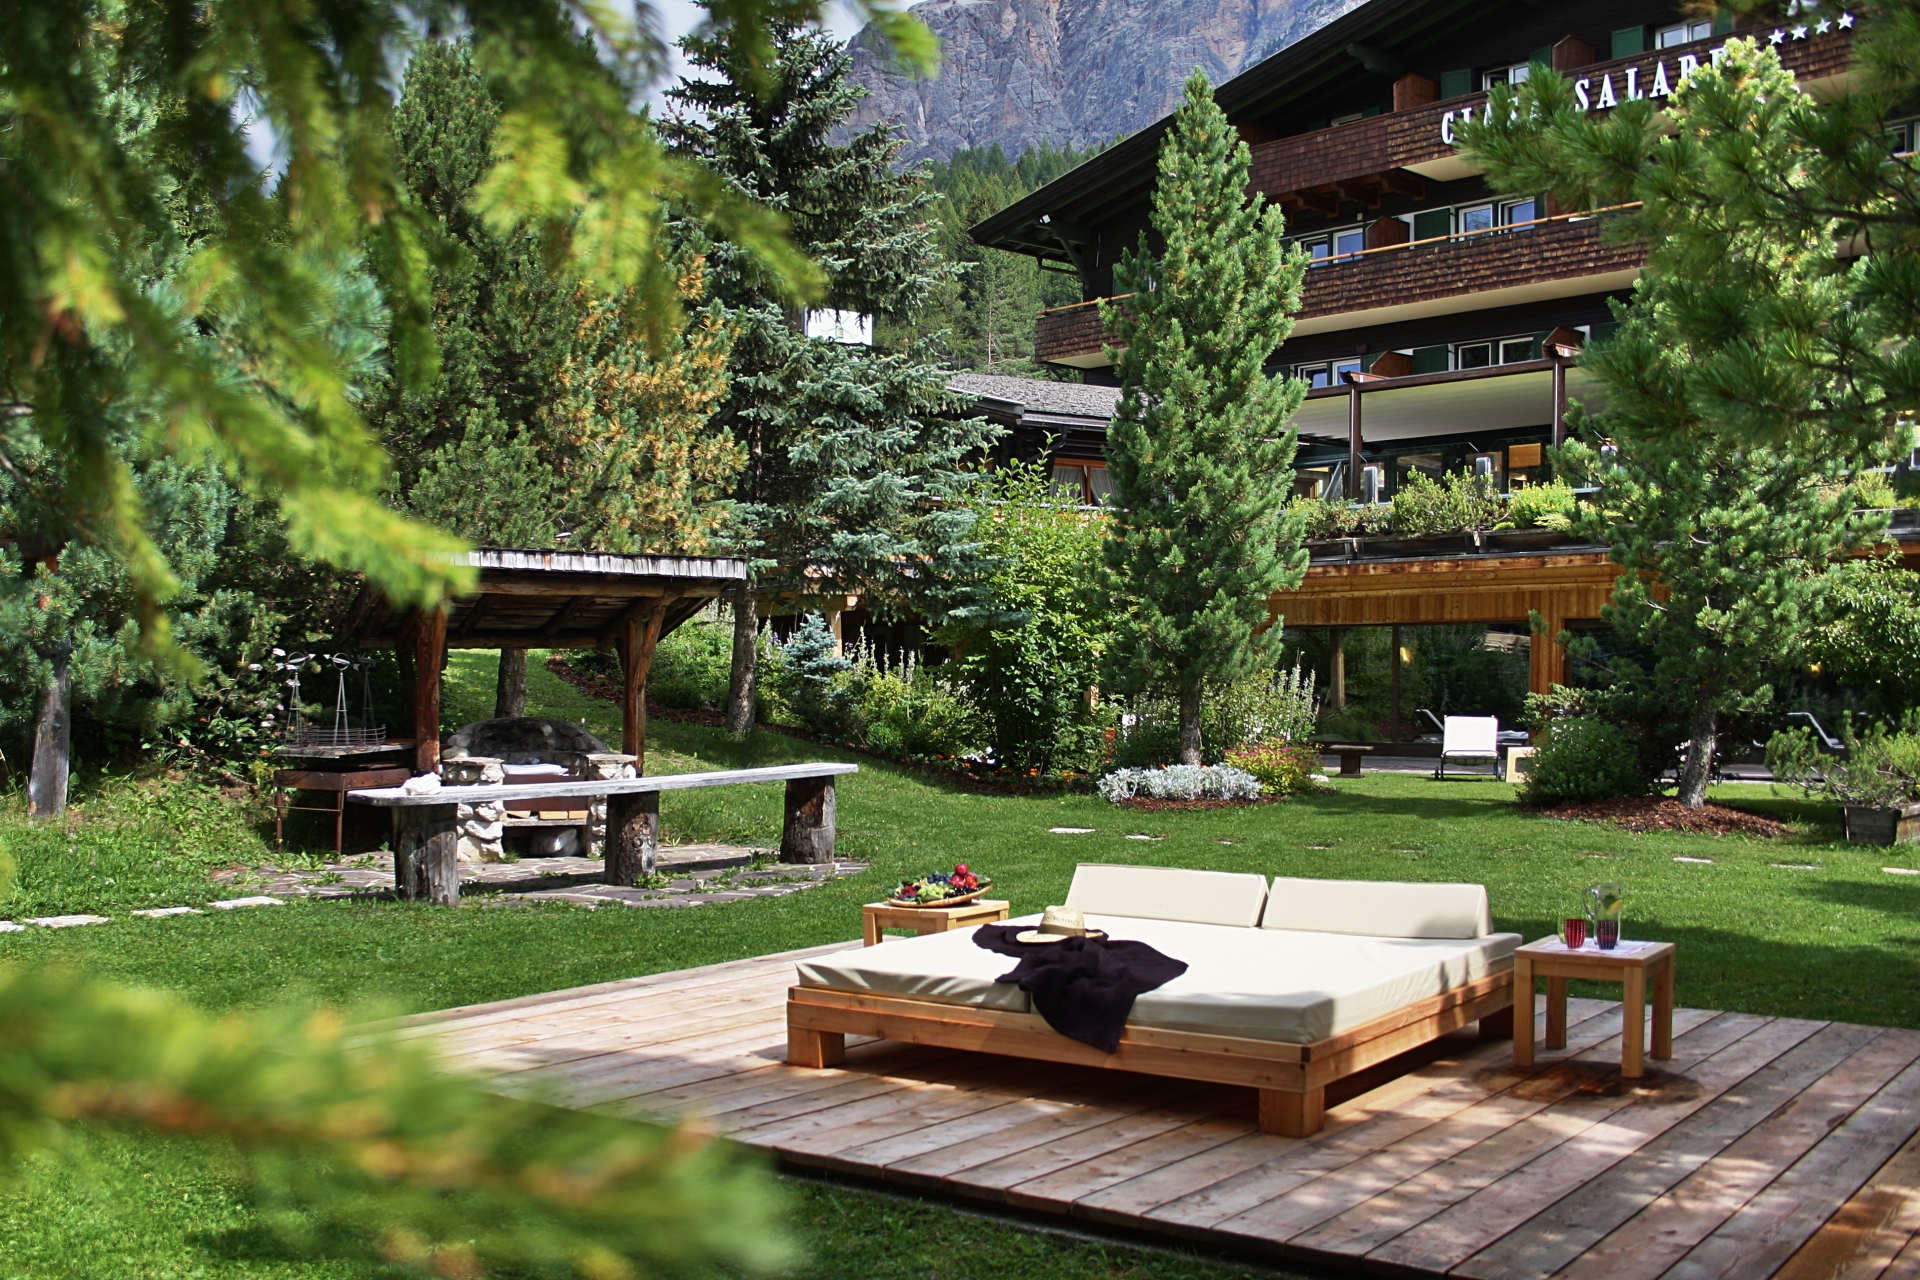 Relaxing garden - Hotel Ciasa Salares Summer